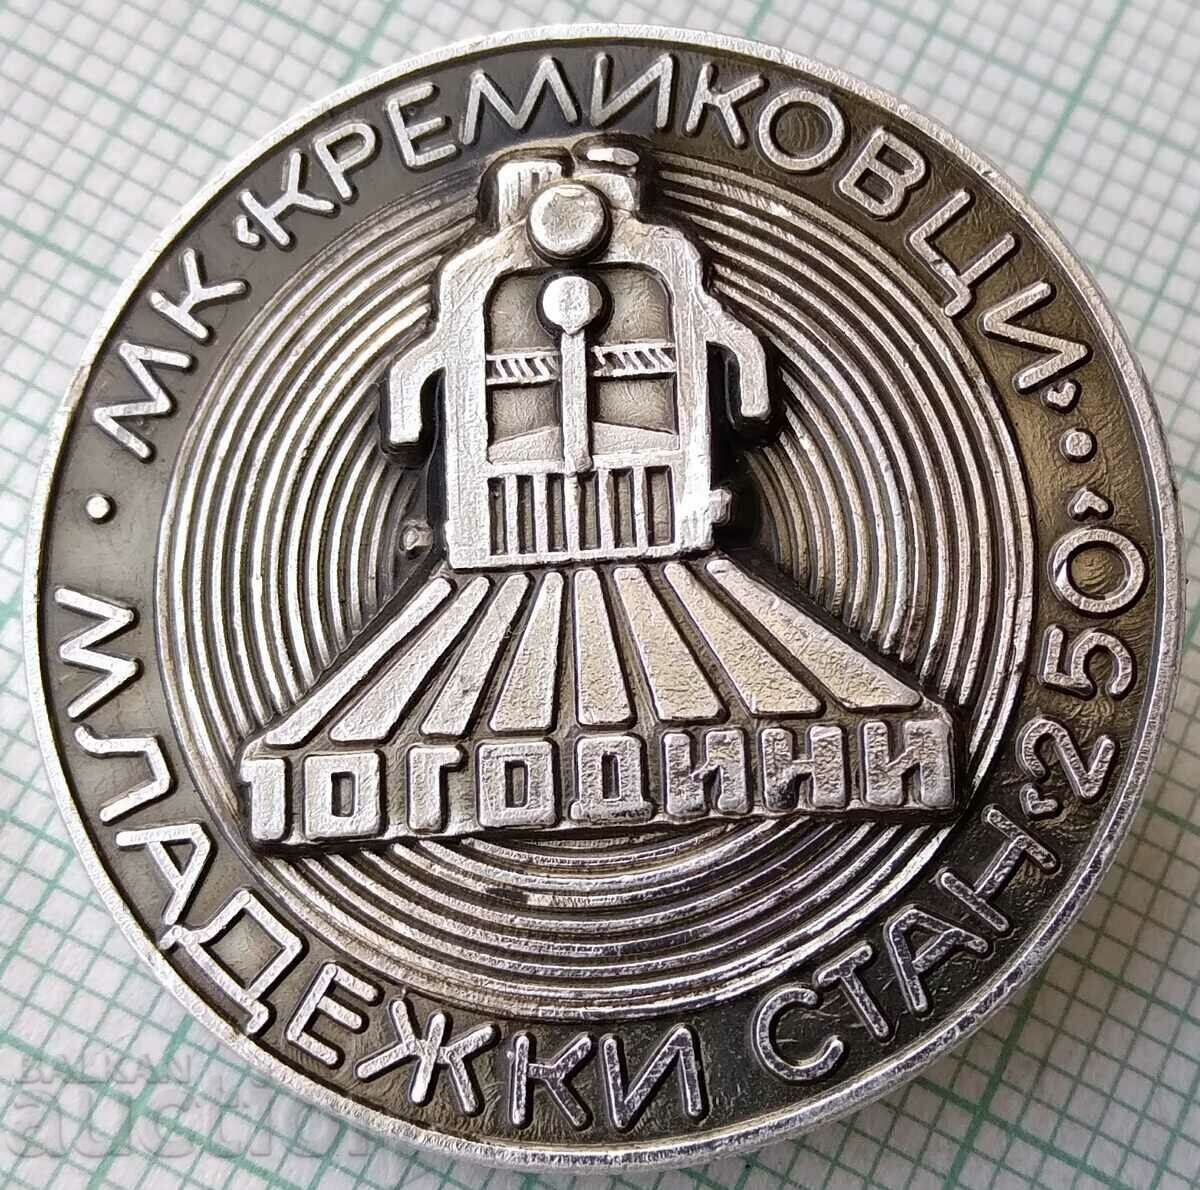 15617 Σήμα - Σταθμός Νέων 10 ετών 250 MK Kremikovtsi